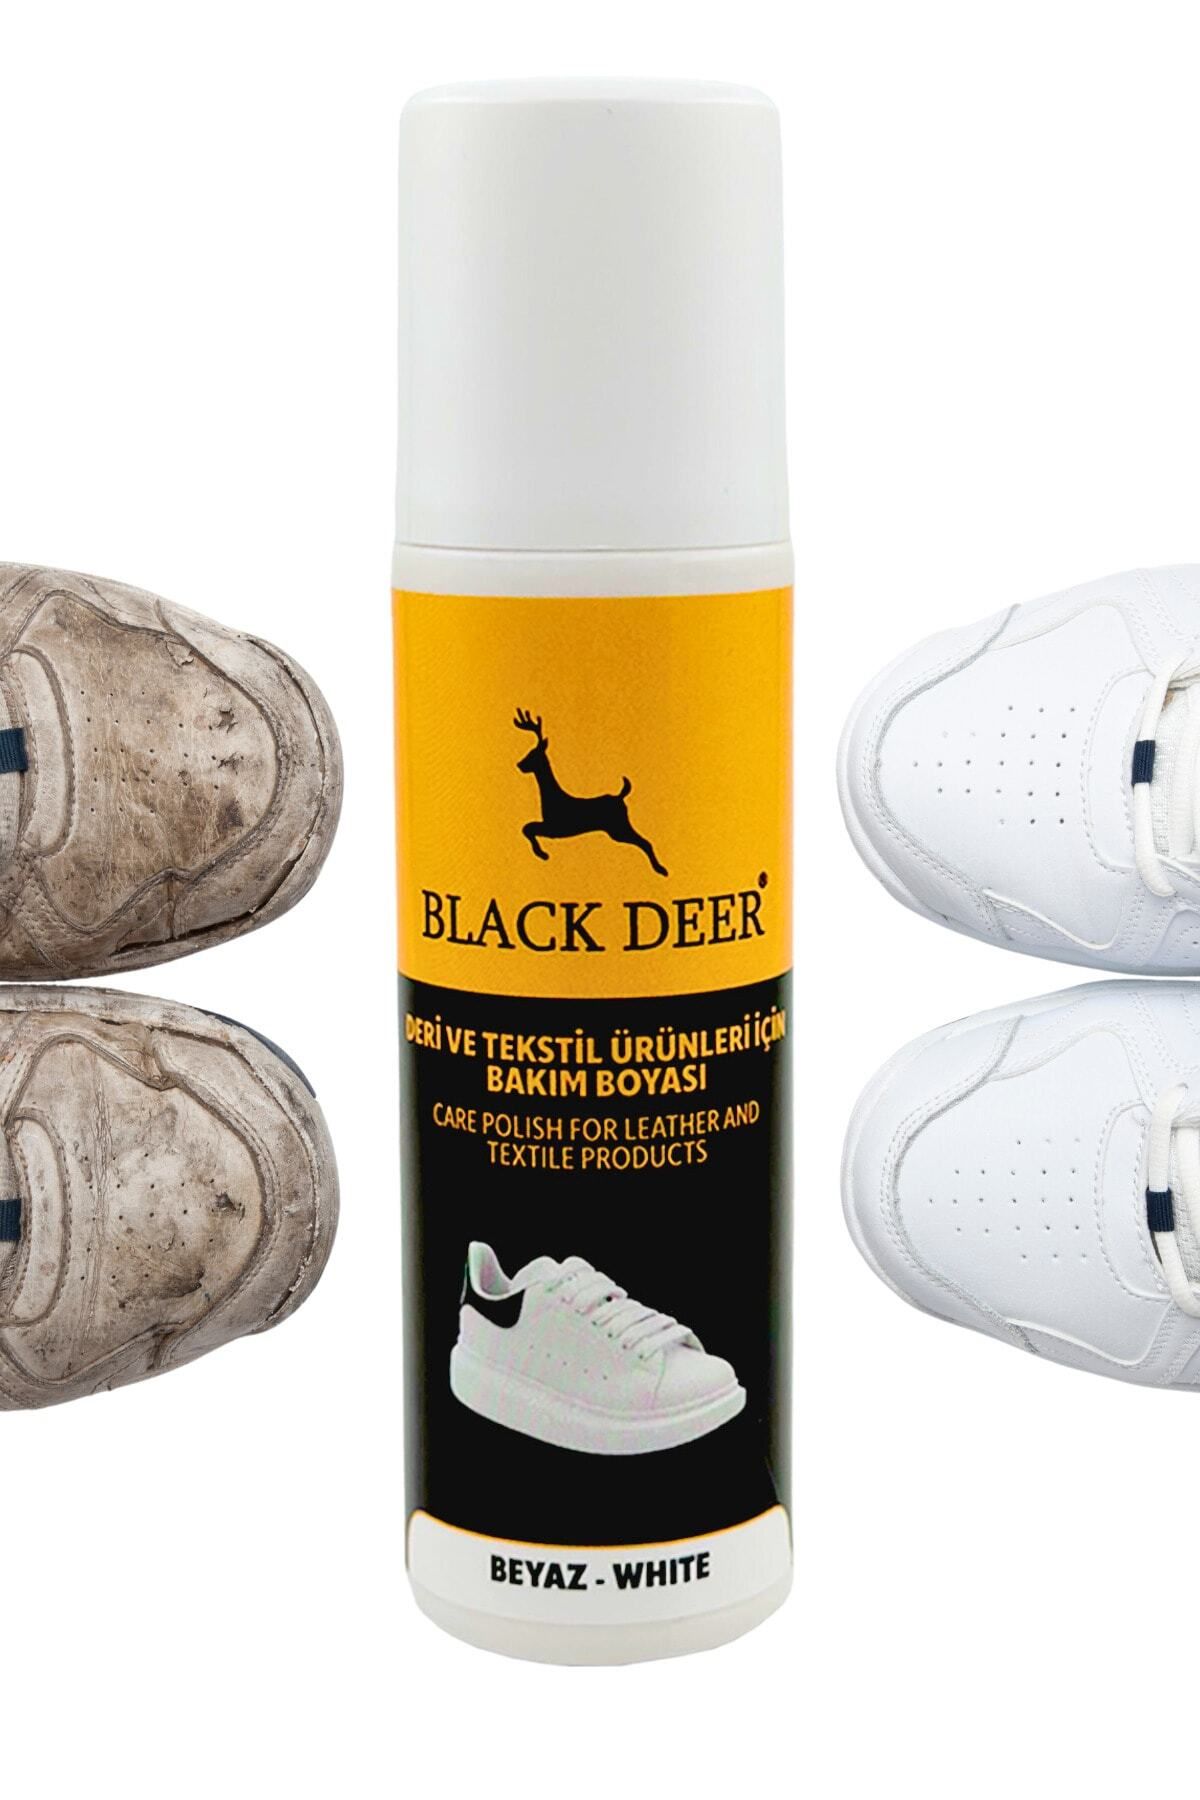 BLACK DEER Beyaz Ayakkabı,deri Ve Kumaş Boyası,sneaker Beyaz Ayakkabı Temizleyici,deri,kanvas Boya 75 Ml